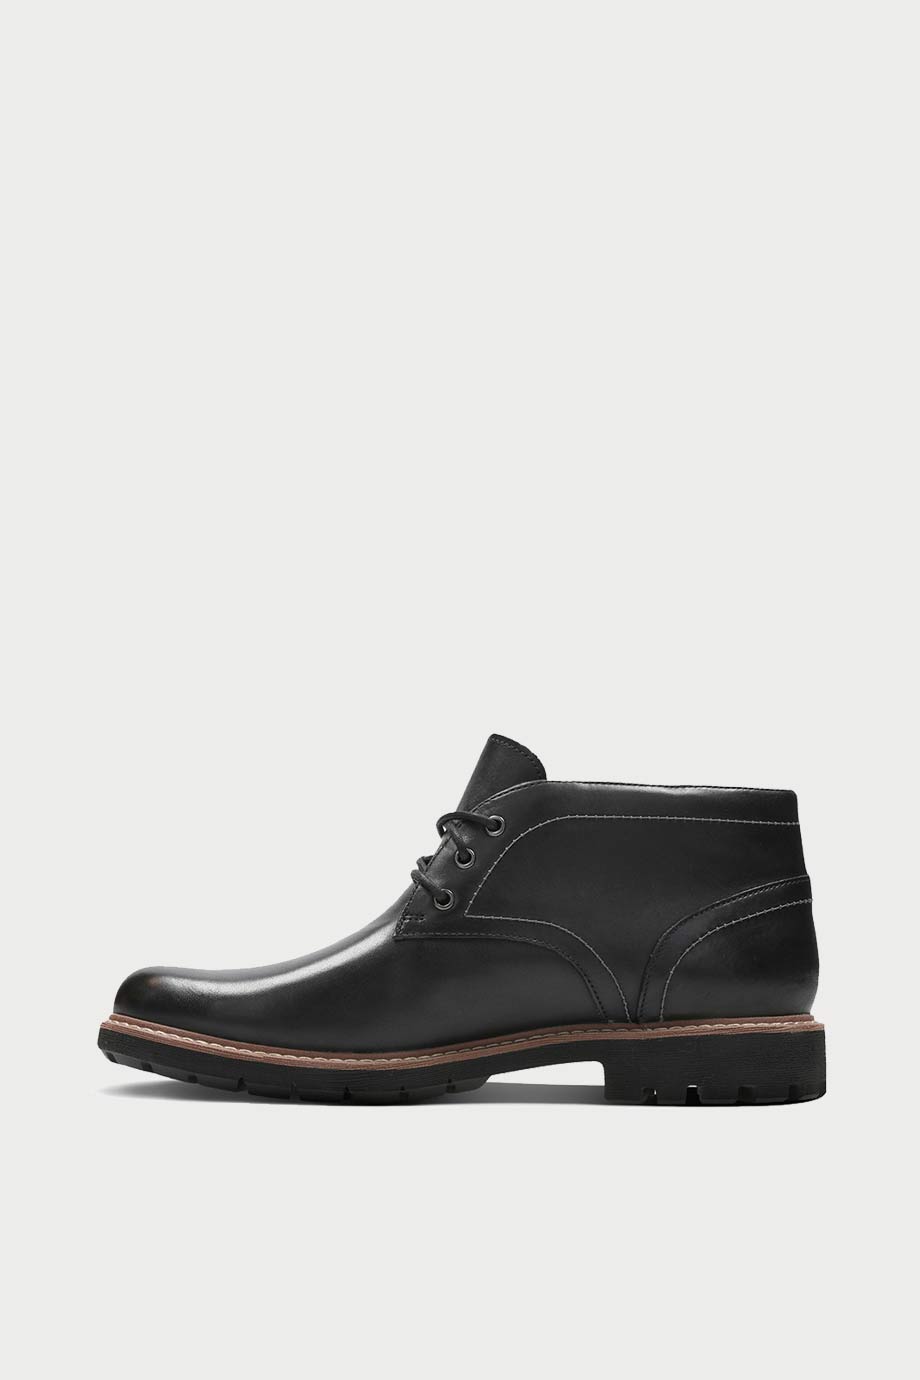 spiridoula metheniti shoes xalkida p batcombe lo black leather clarks 5 1